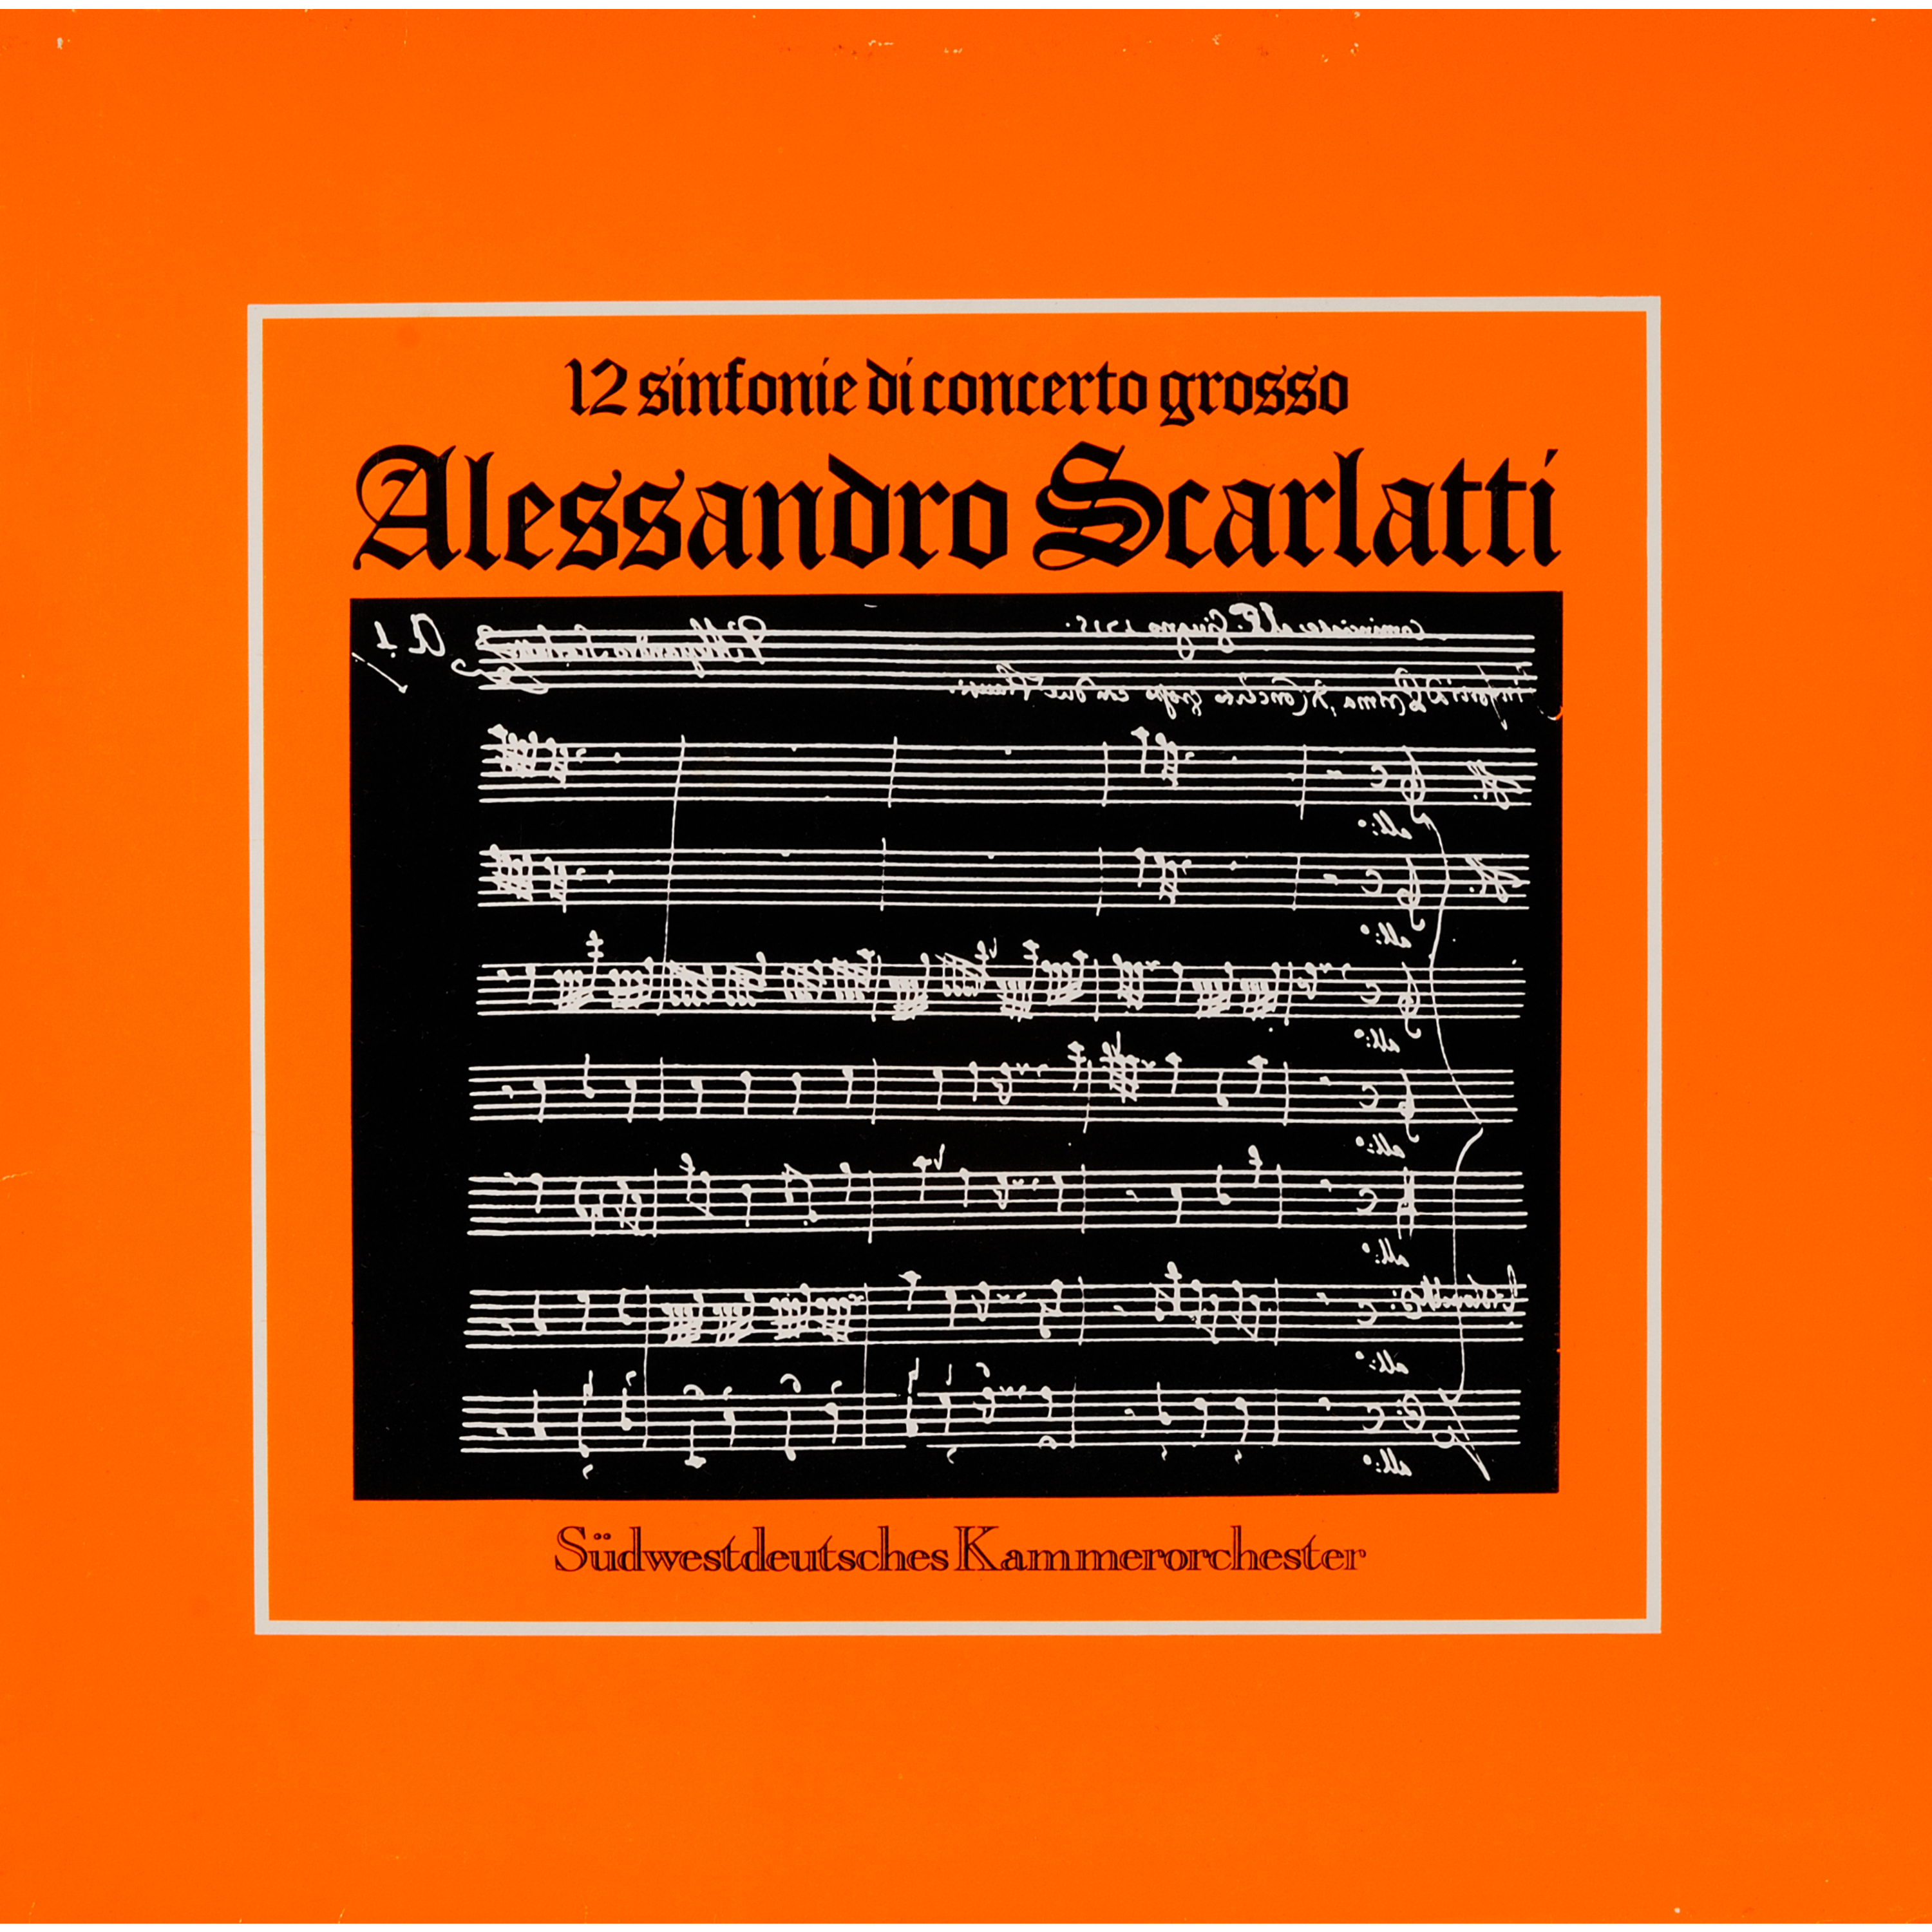 Scarlatti: Sinfonie di concerto grosso, Vol. 1